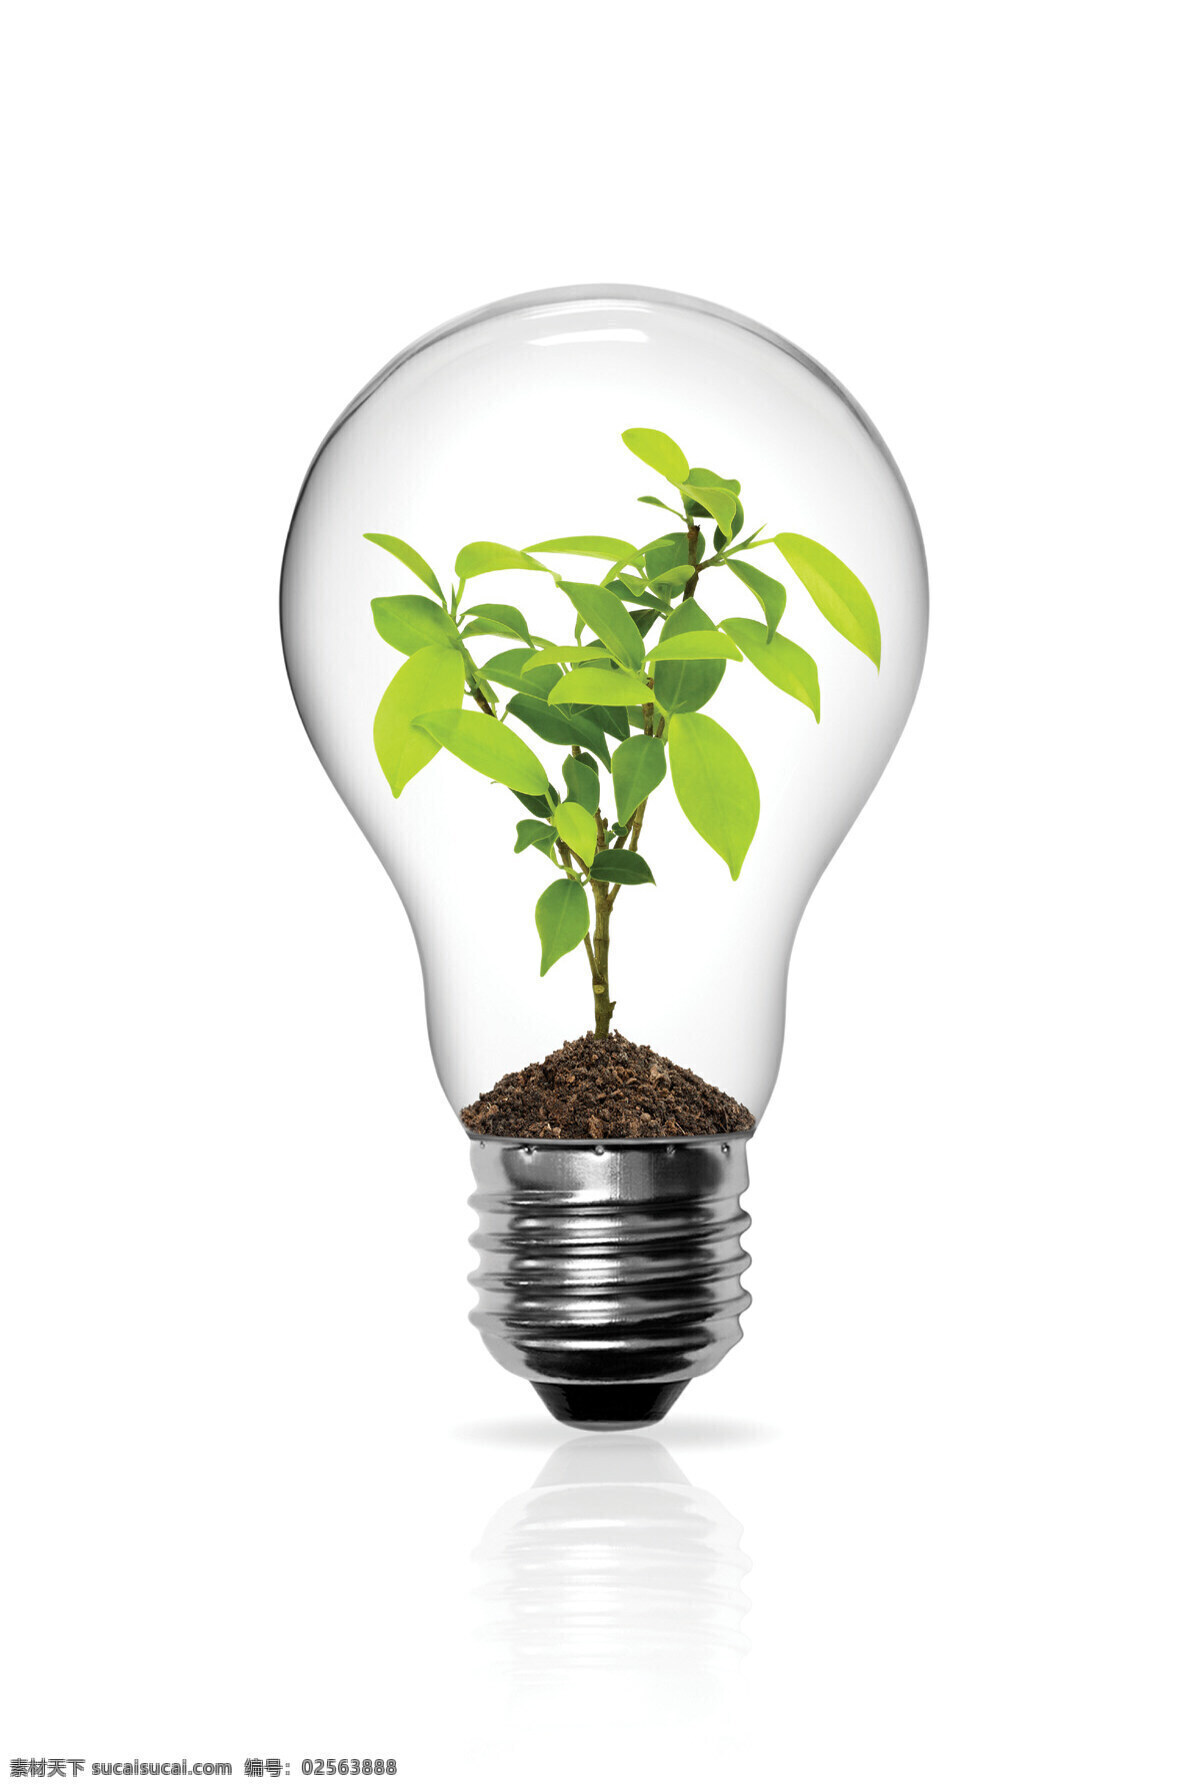 创意 环保 海报 灯泡 树叶 公益 合成素材 绿色 自然 企业形象图